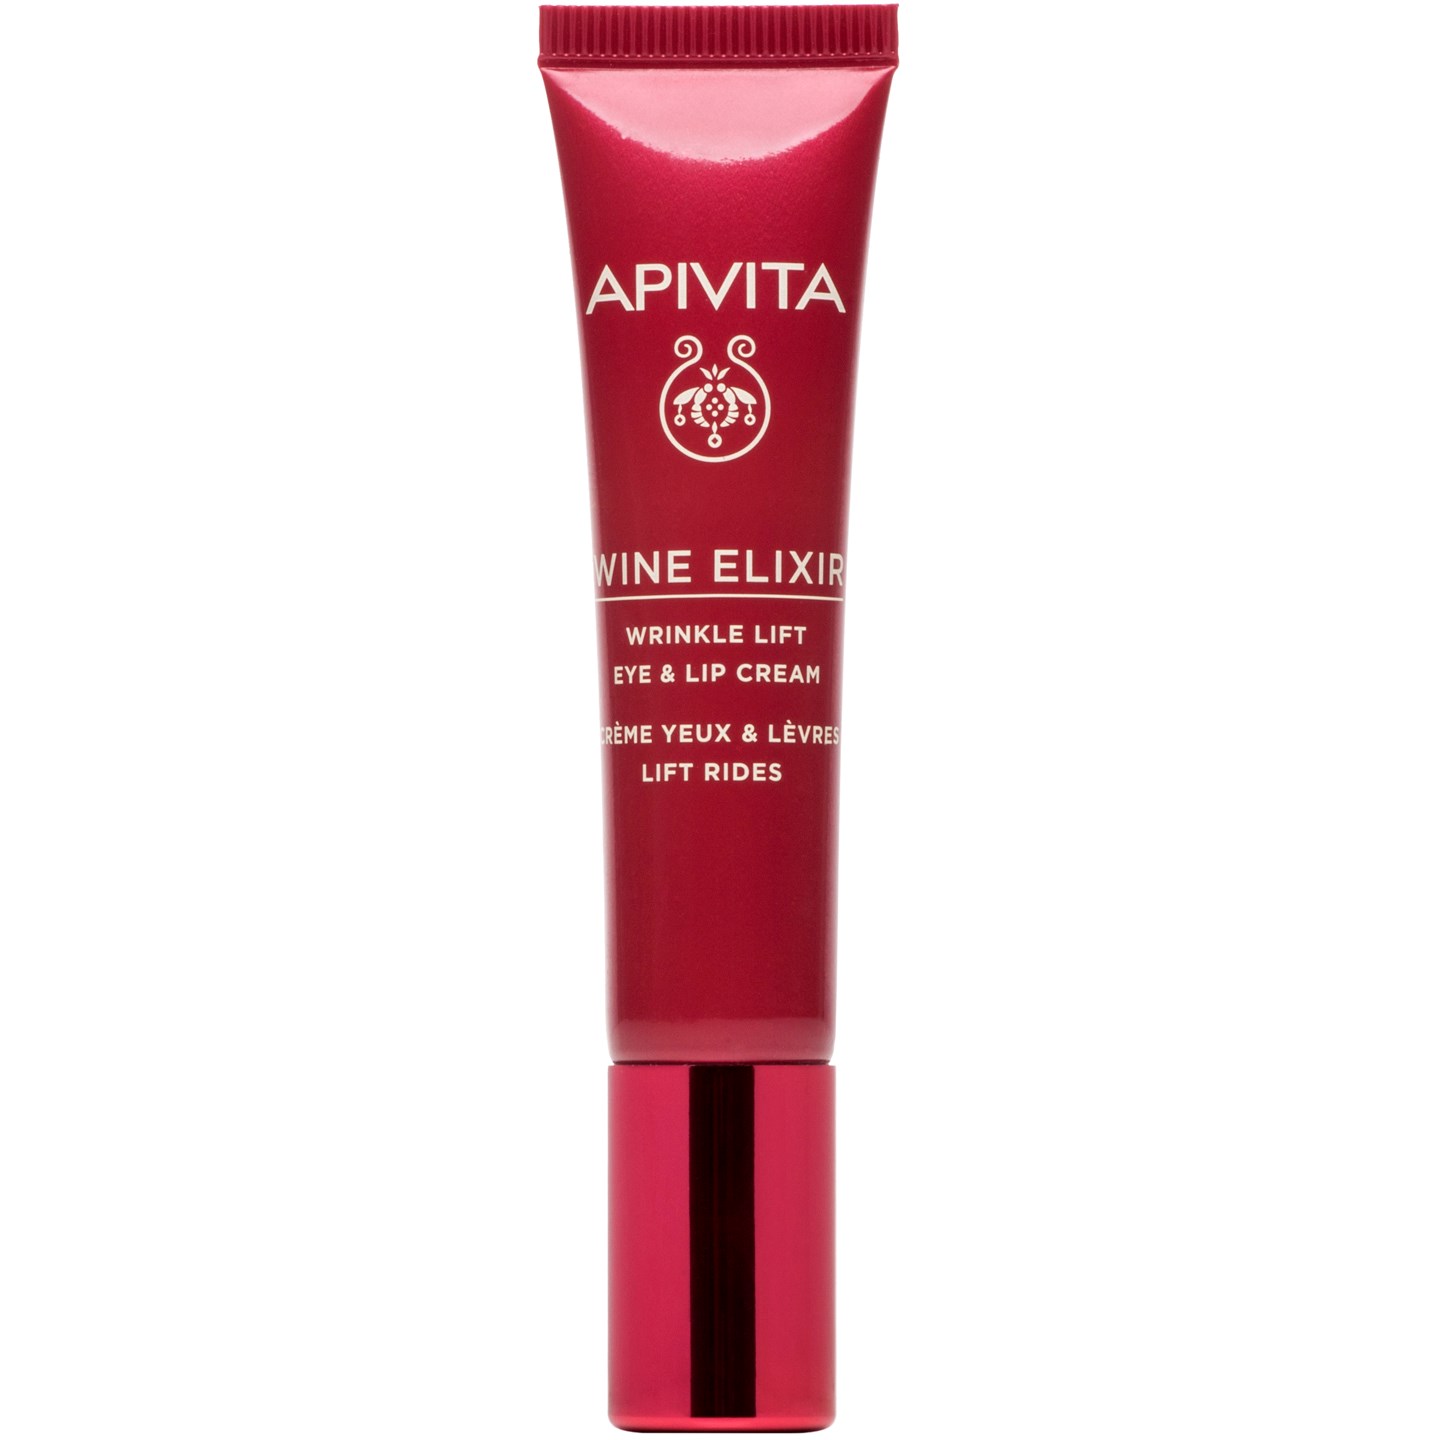 Bilde av Apivita Wine Elixir Wrinkle Lift Eye & Lip Cream 15 Ml